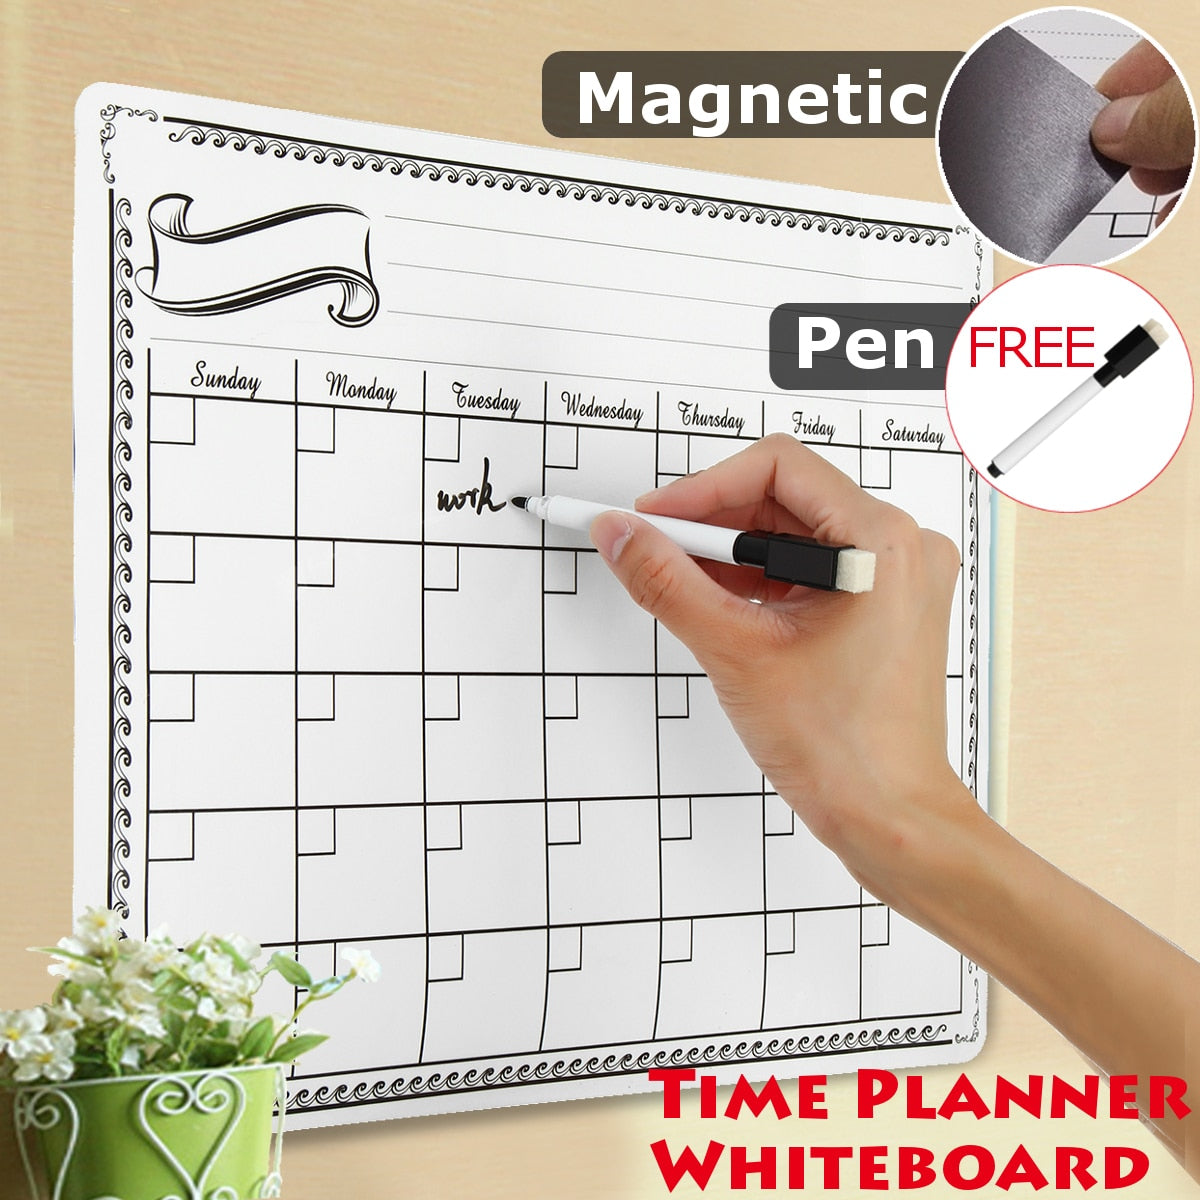 Magnet Plan Whiteboard Flexible Fridge Magnetic Refrigerator Dry Erase Board Waterproof Drawing Message Board 42X30CM